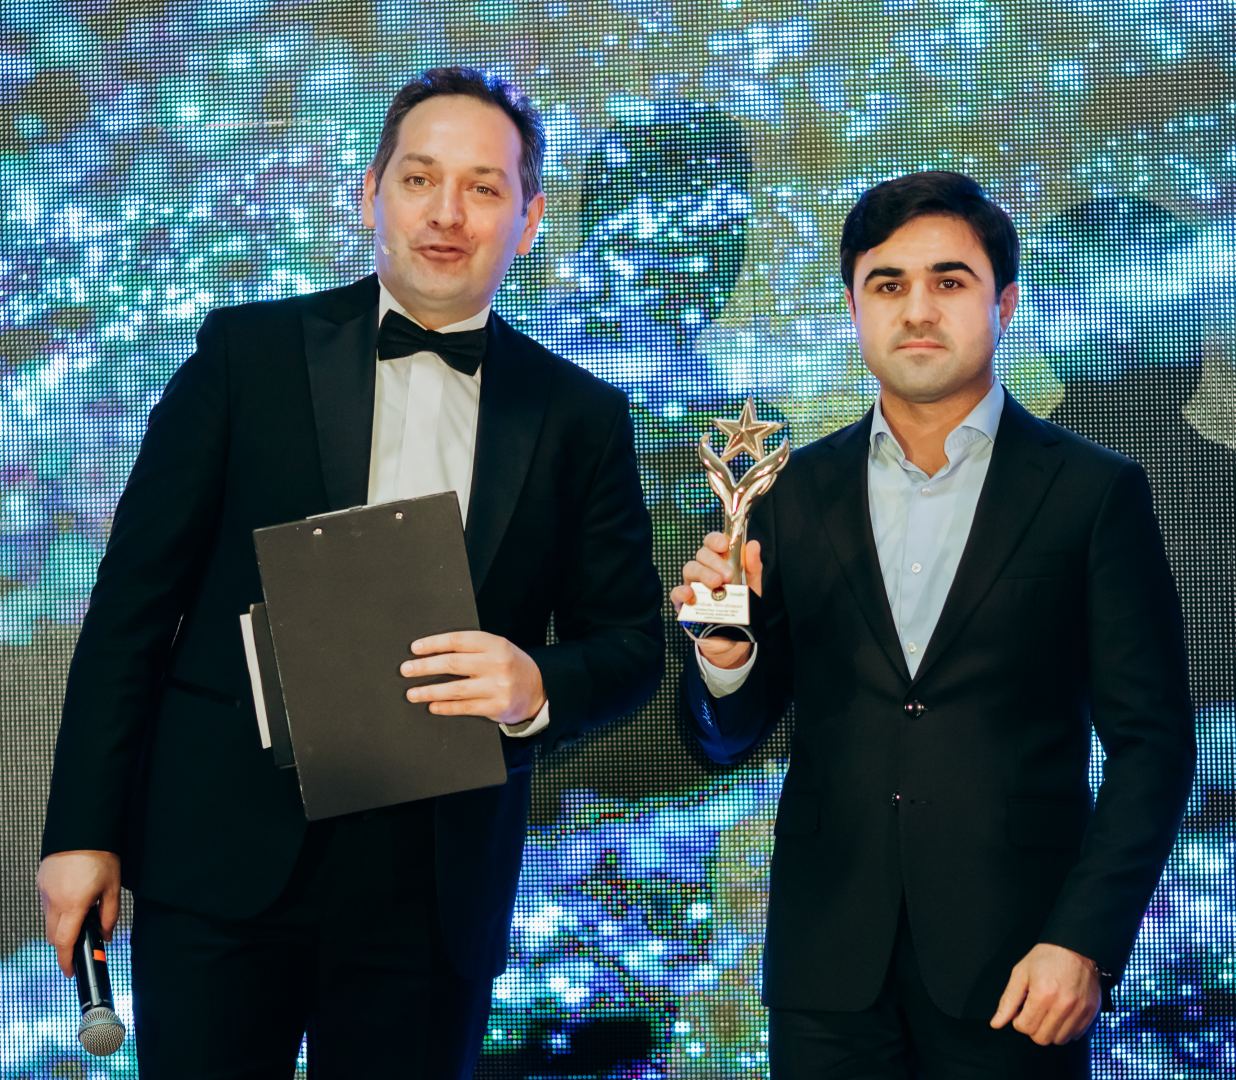 В Баку впервые прошла церемония награждения премии Global Star Awards (ФОТО)